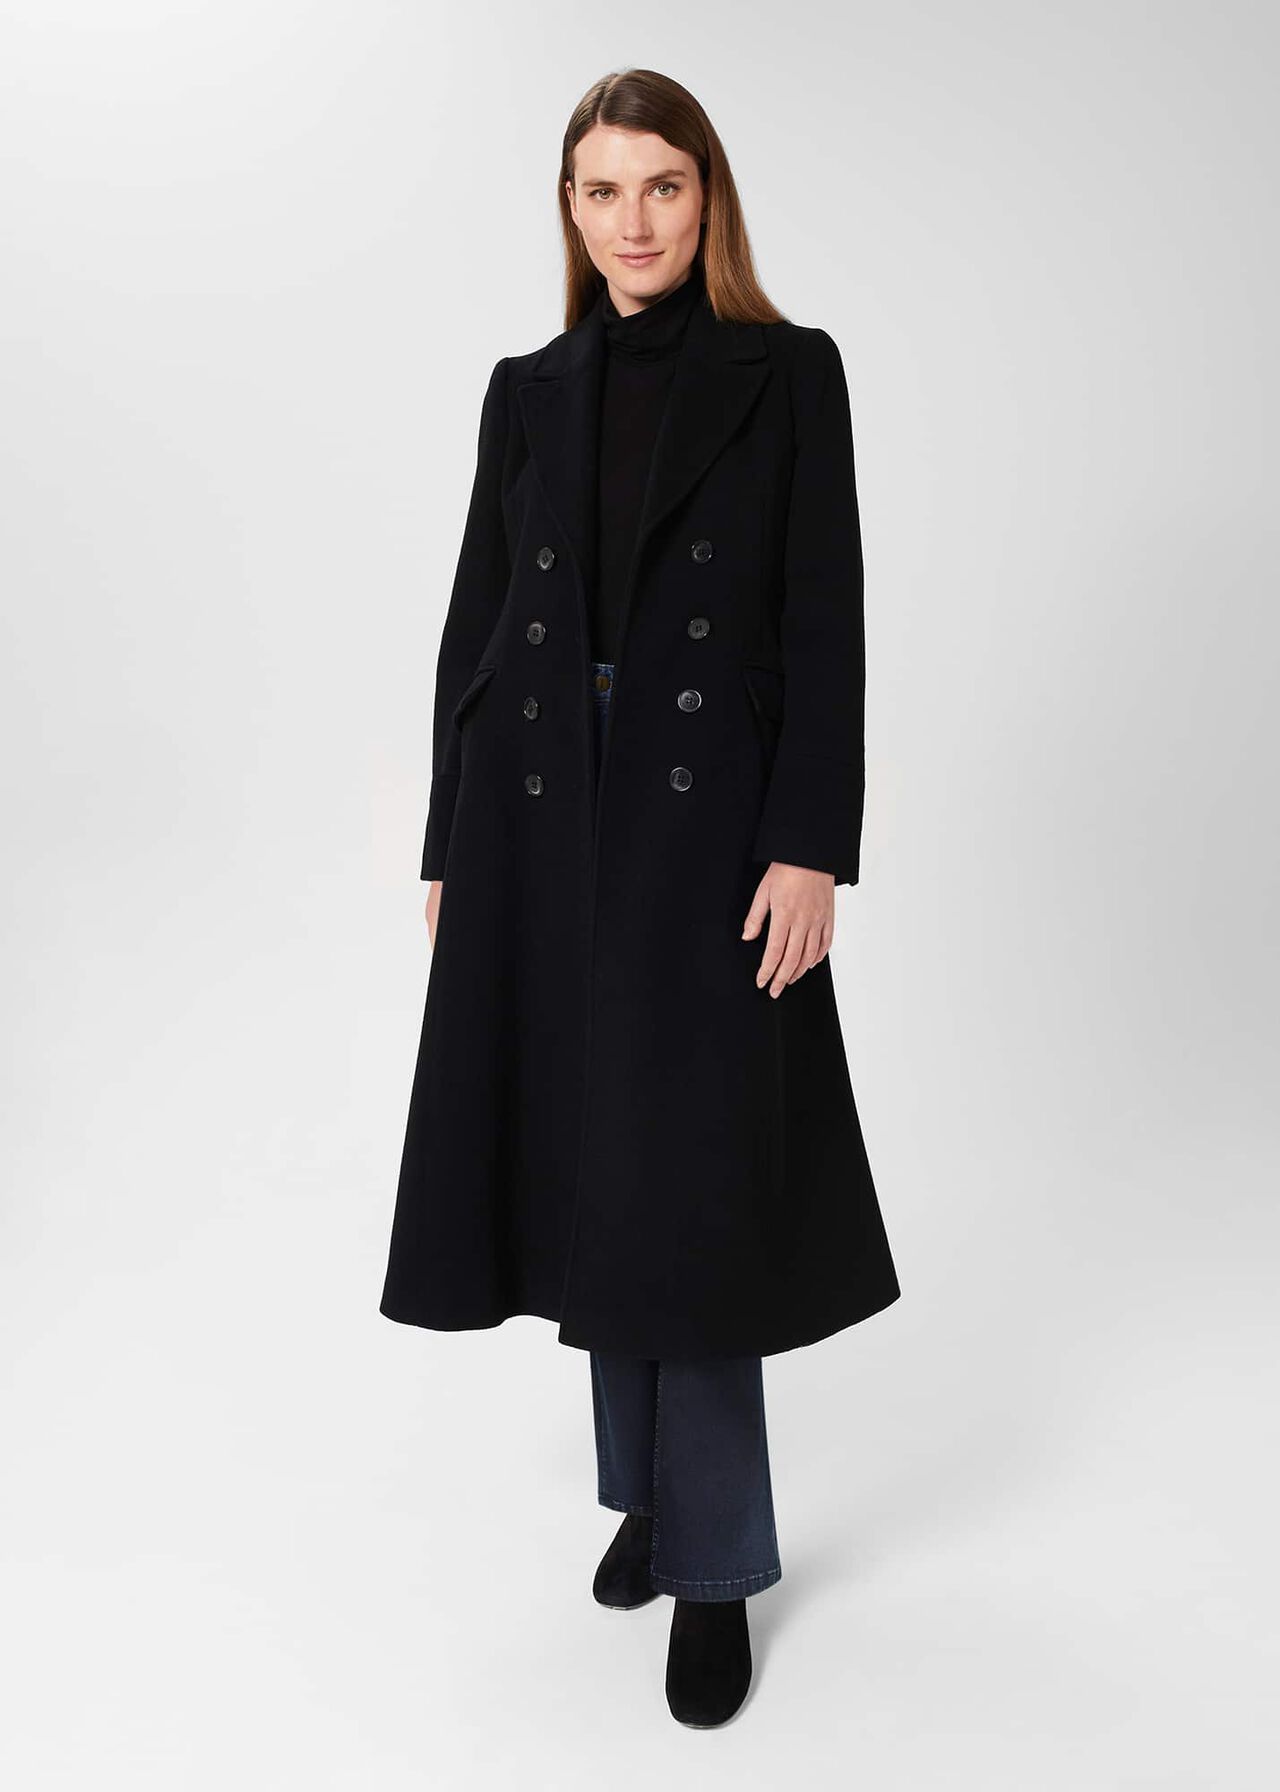 Blakely Coat, Black, hi-res